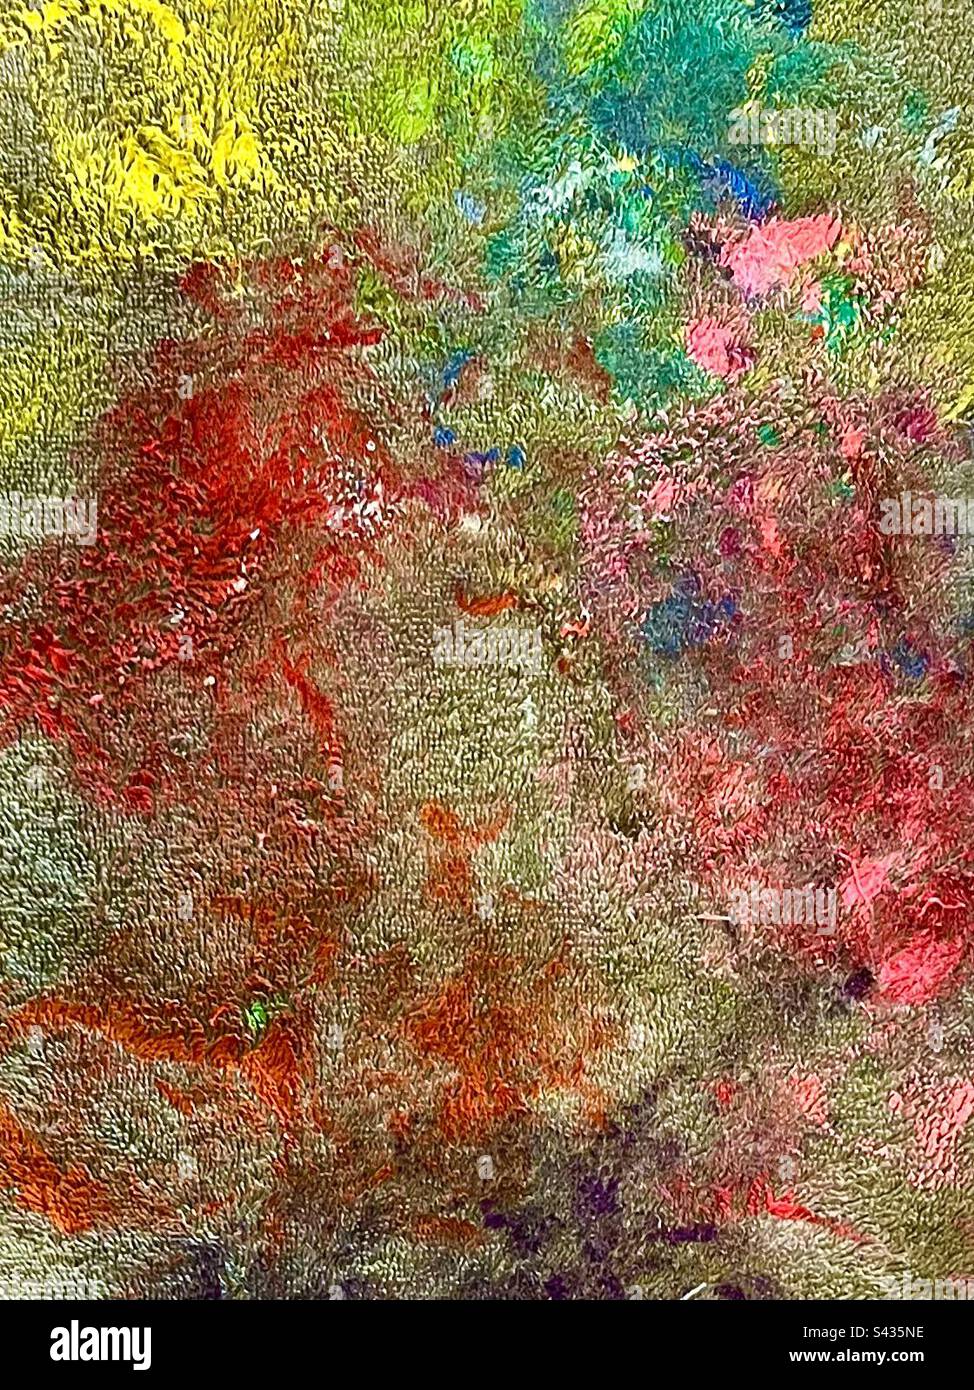 Arrière-plan coloré, éclaboussures de peinture, teinture par cravate, tissu de dépôt d'artistes désordonné. Banque D'Images